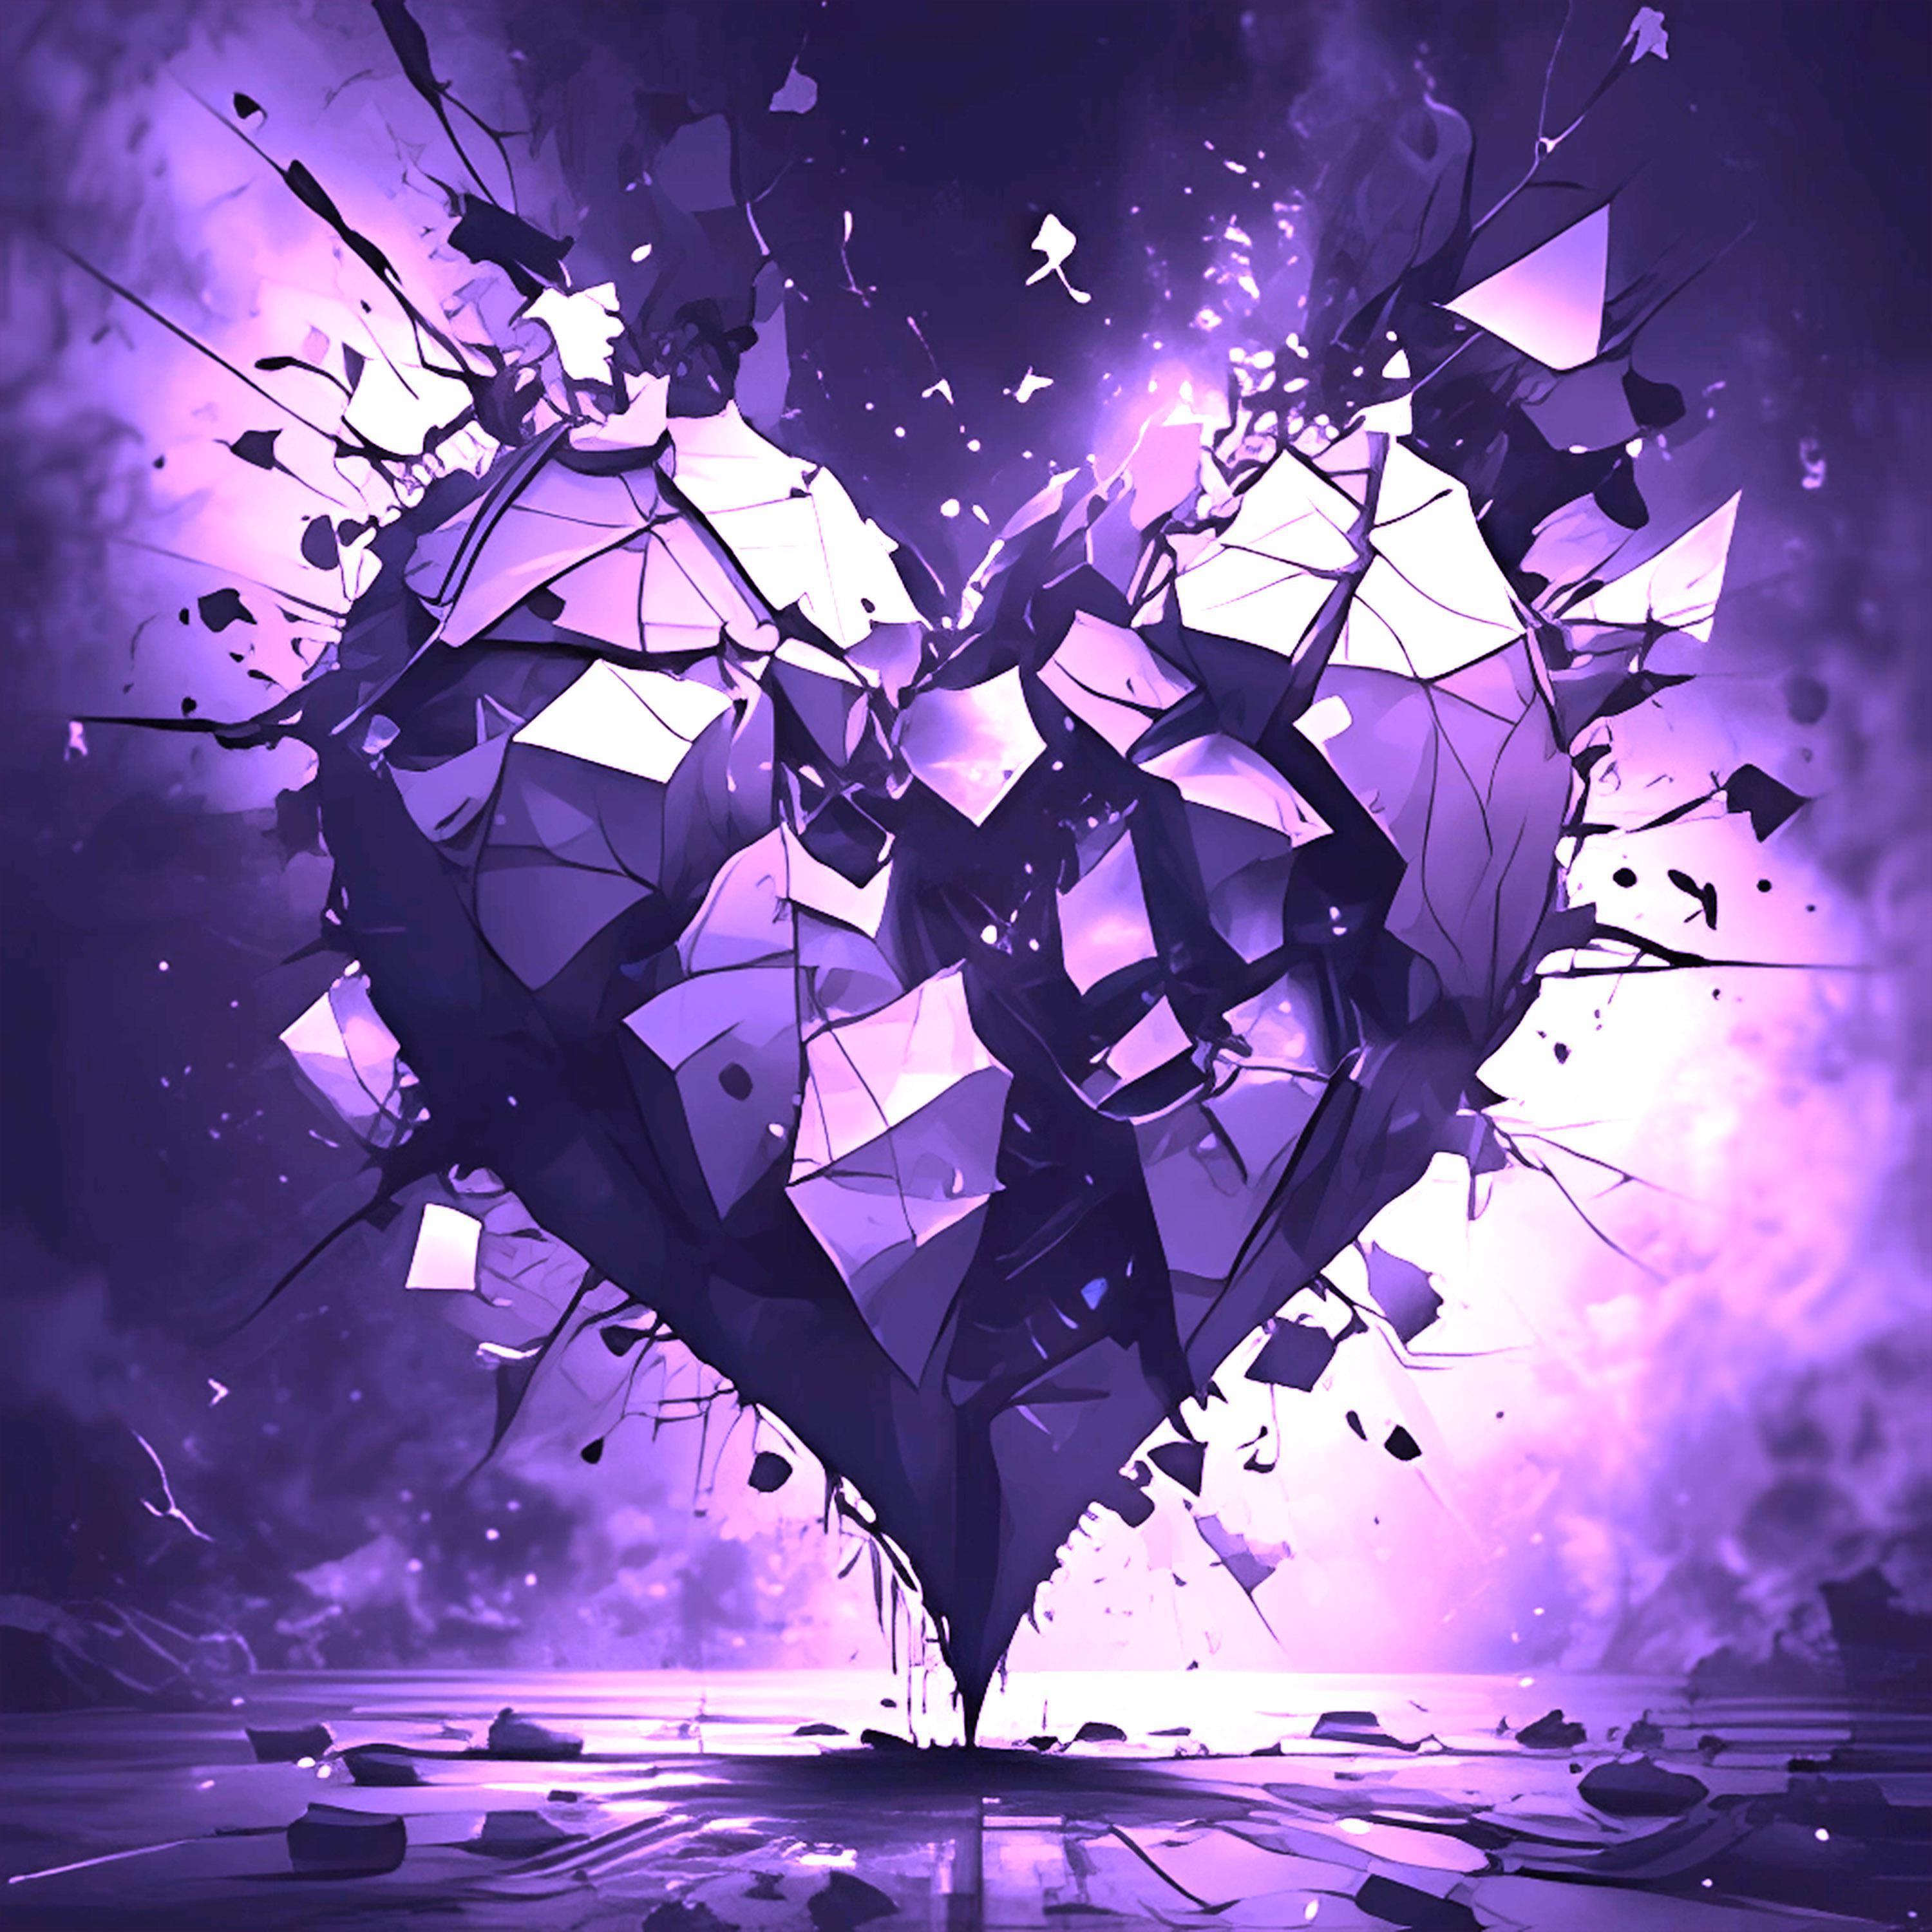 Постер альбома Разбитое сердце